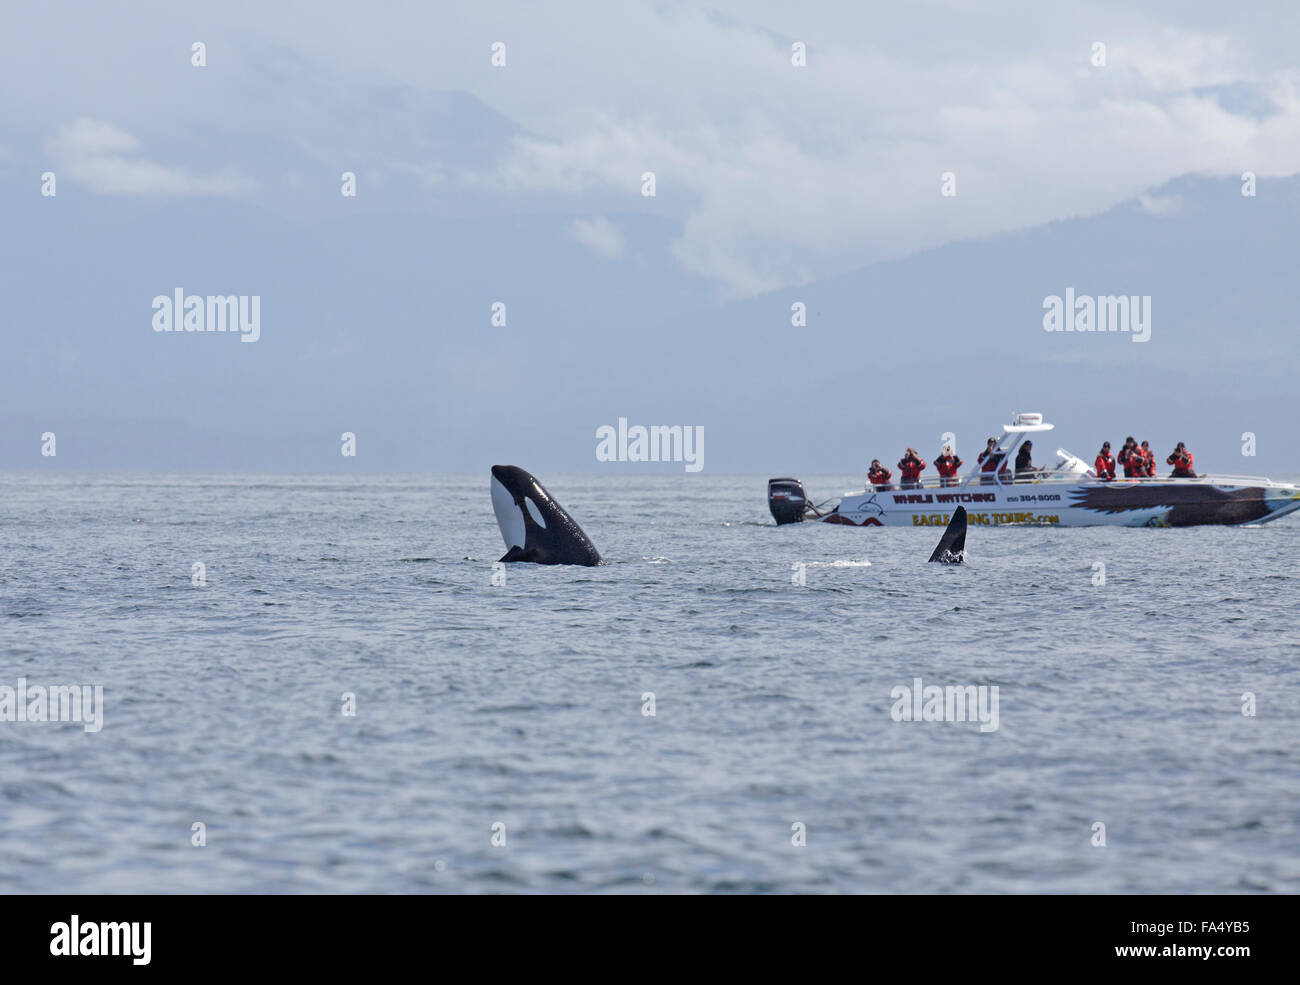 Orca, la ballena asesina, Orcinus orca, se situó en el agua, los observadores viendo desde el barco, avistaje de ballenas Foto de stock